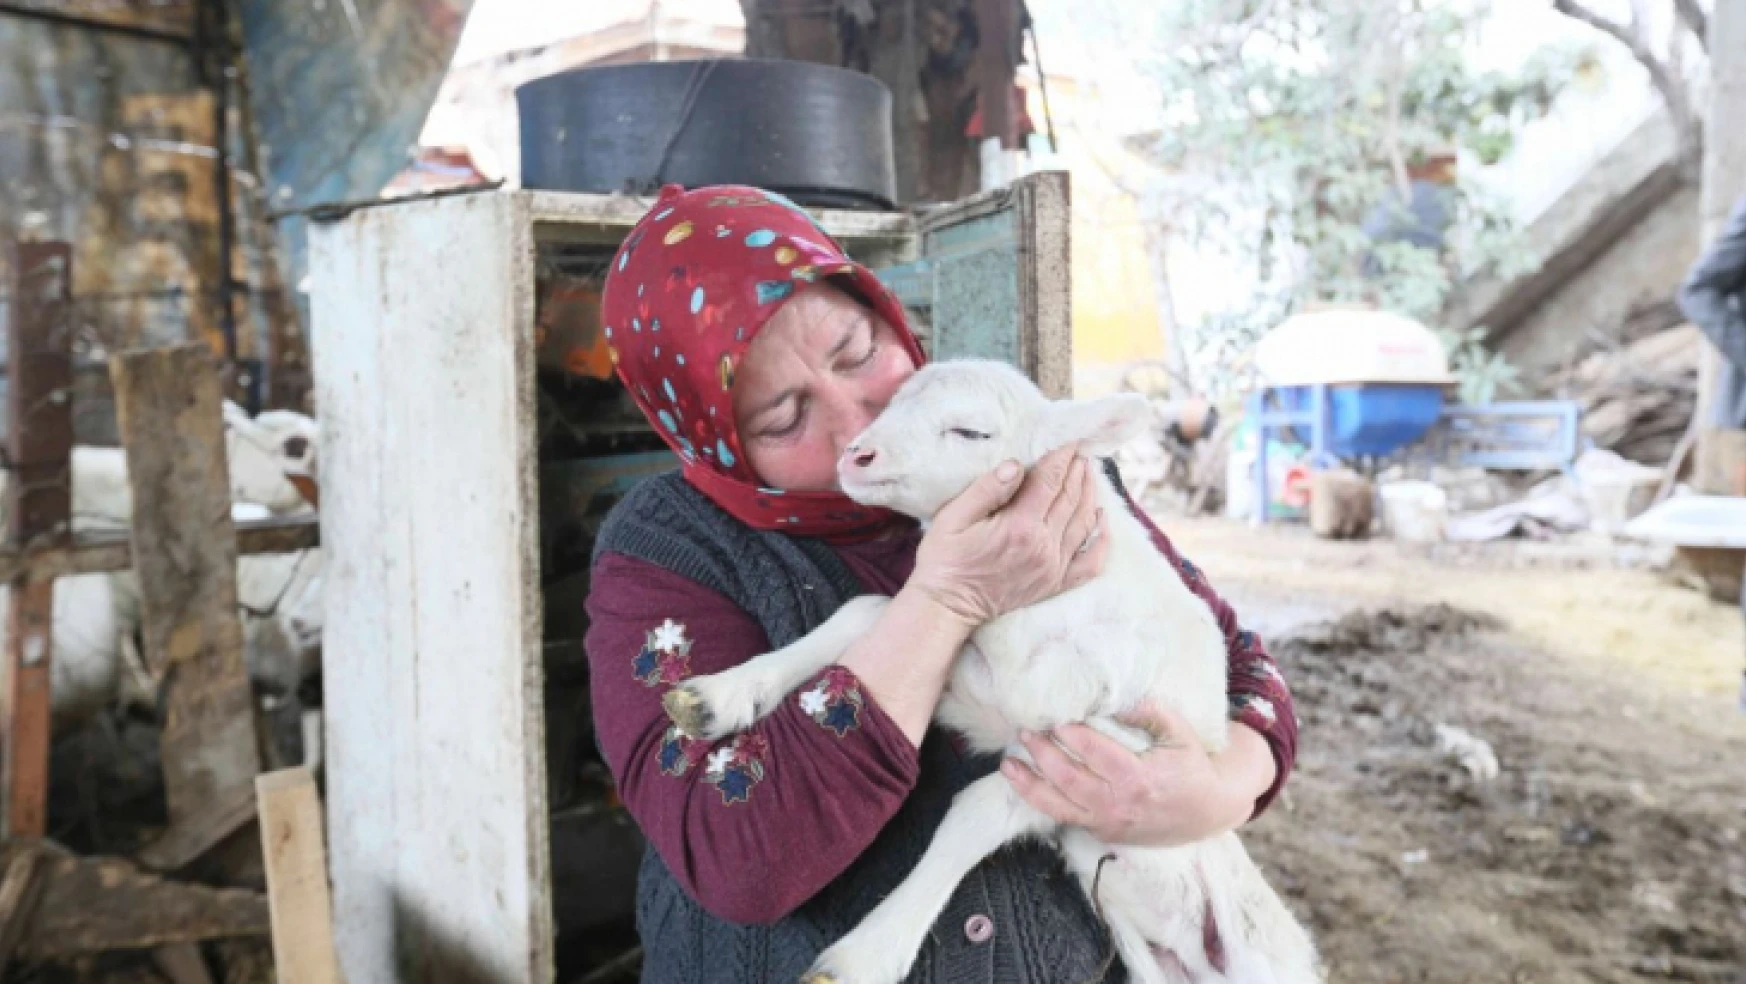 Aydın Büyükşehir Belediyesi'nin koyun hibe desteği ile sürüler büyüyor